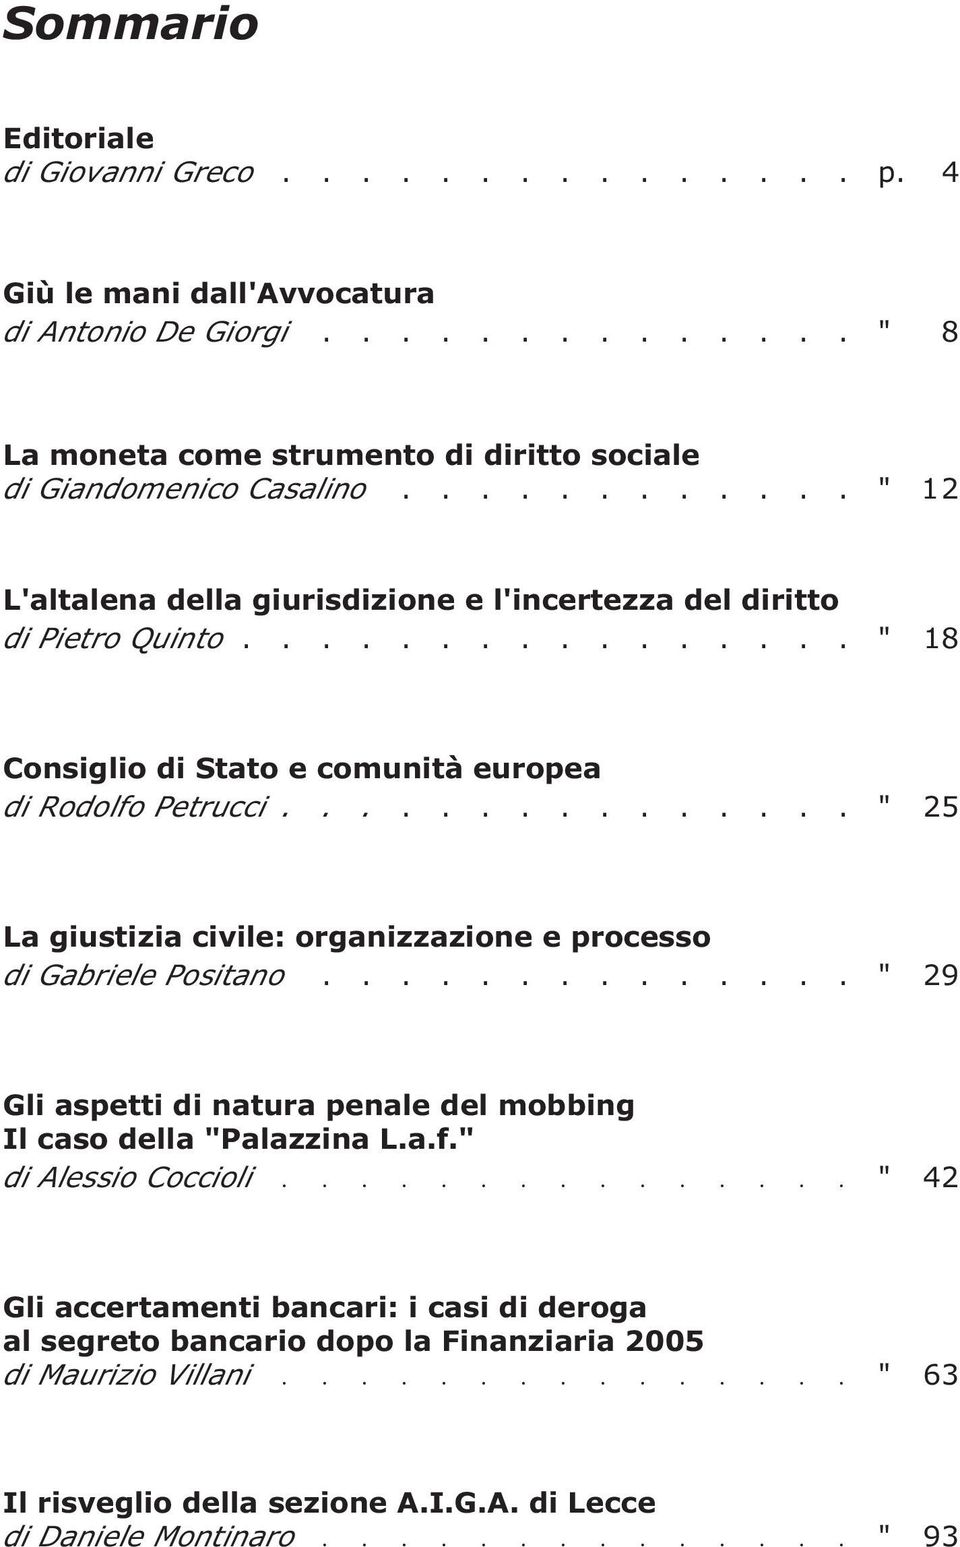 .............. " 25 La giustizia civile: organizzazione e processo di Gabriele Positano.............. " 29 Gli aspetti di natura penale del mobbing Il caso della "Palazzina L.a.f.